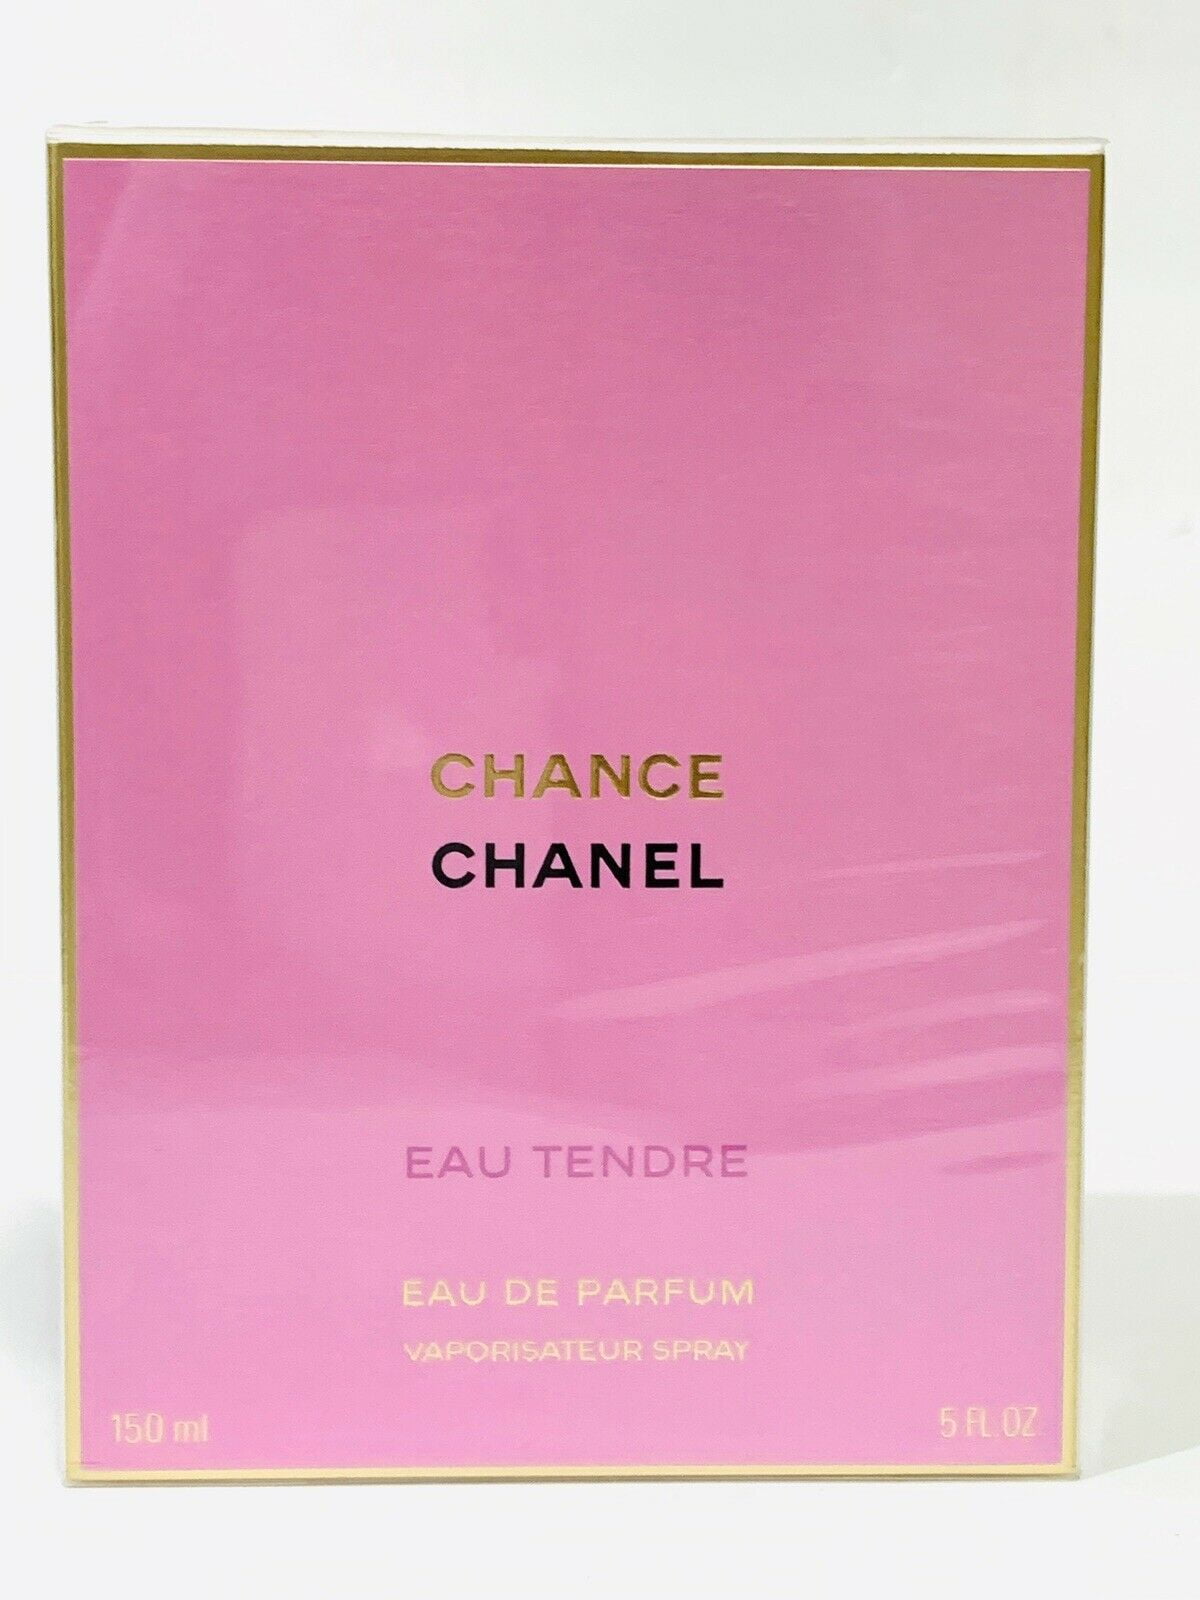 Chanel Chance Eau Tendre Eau de Parfum Spray 150ml/5oz 